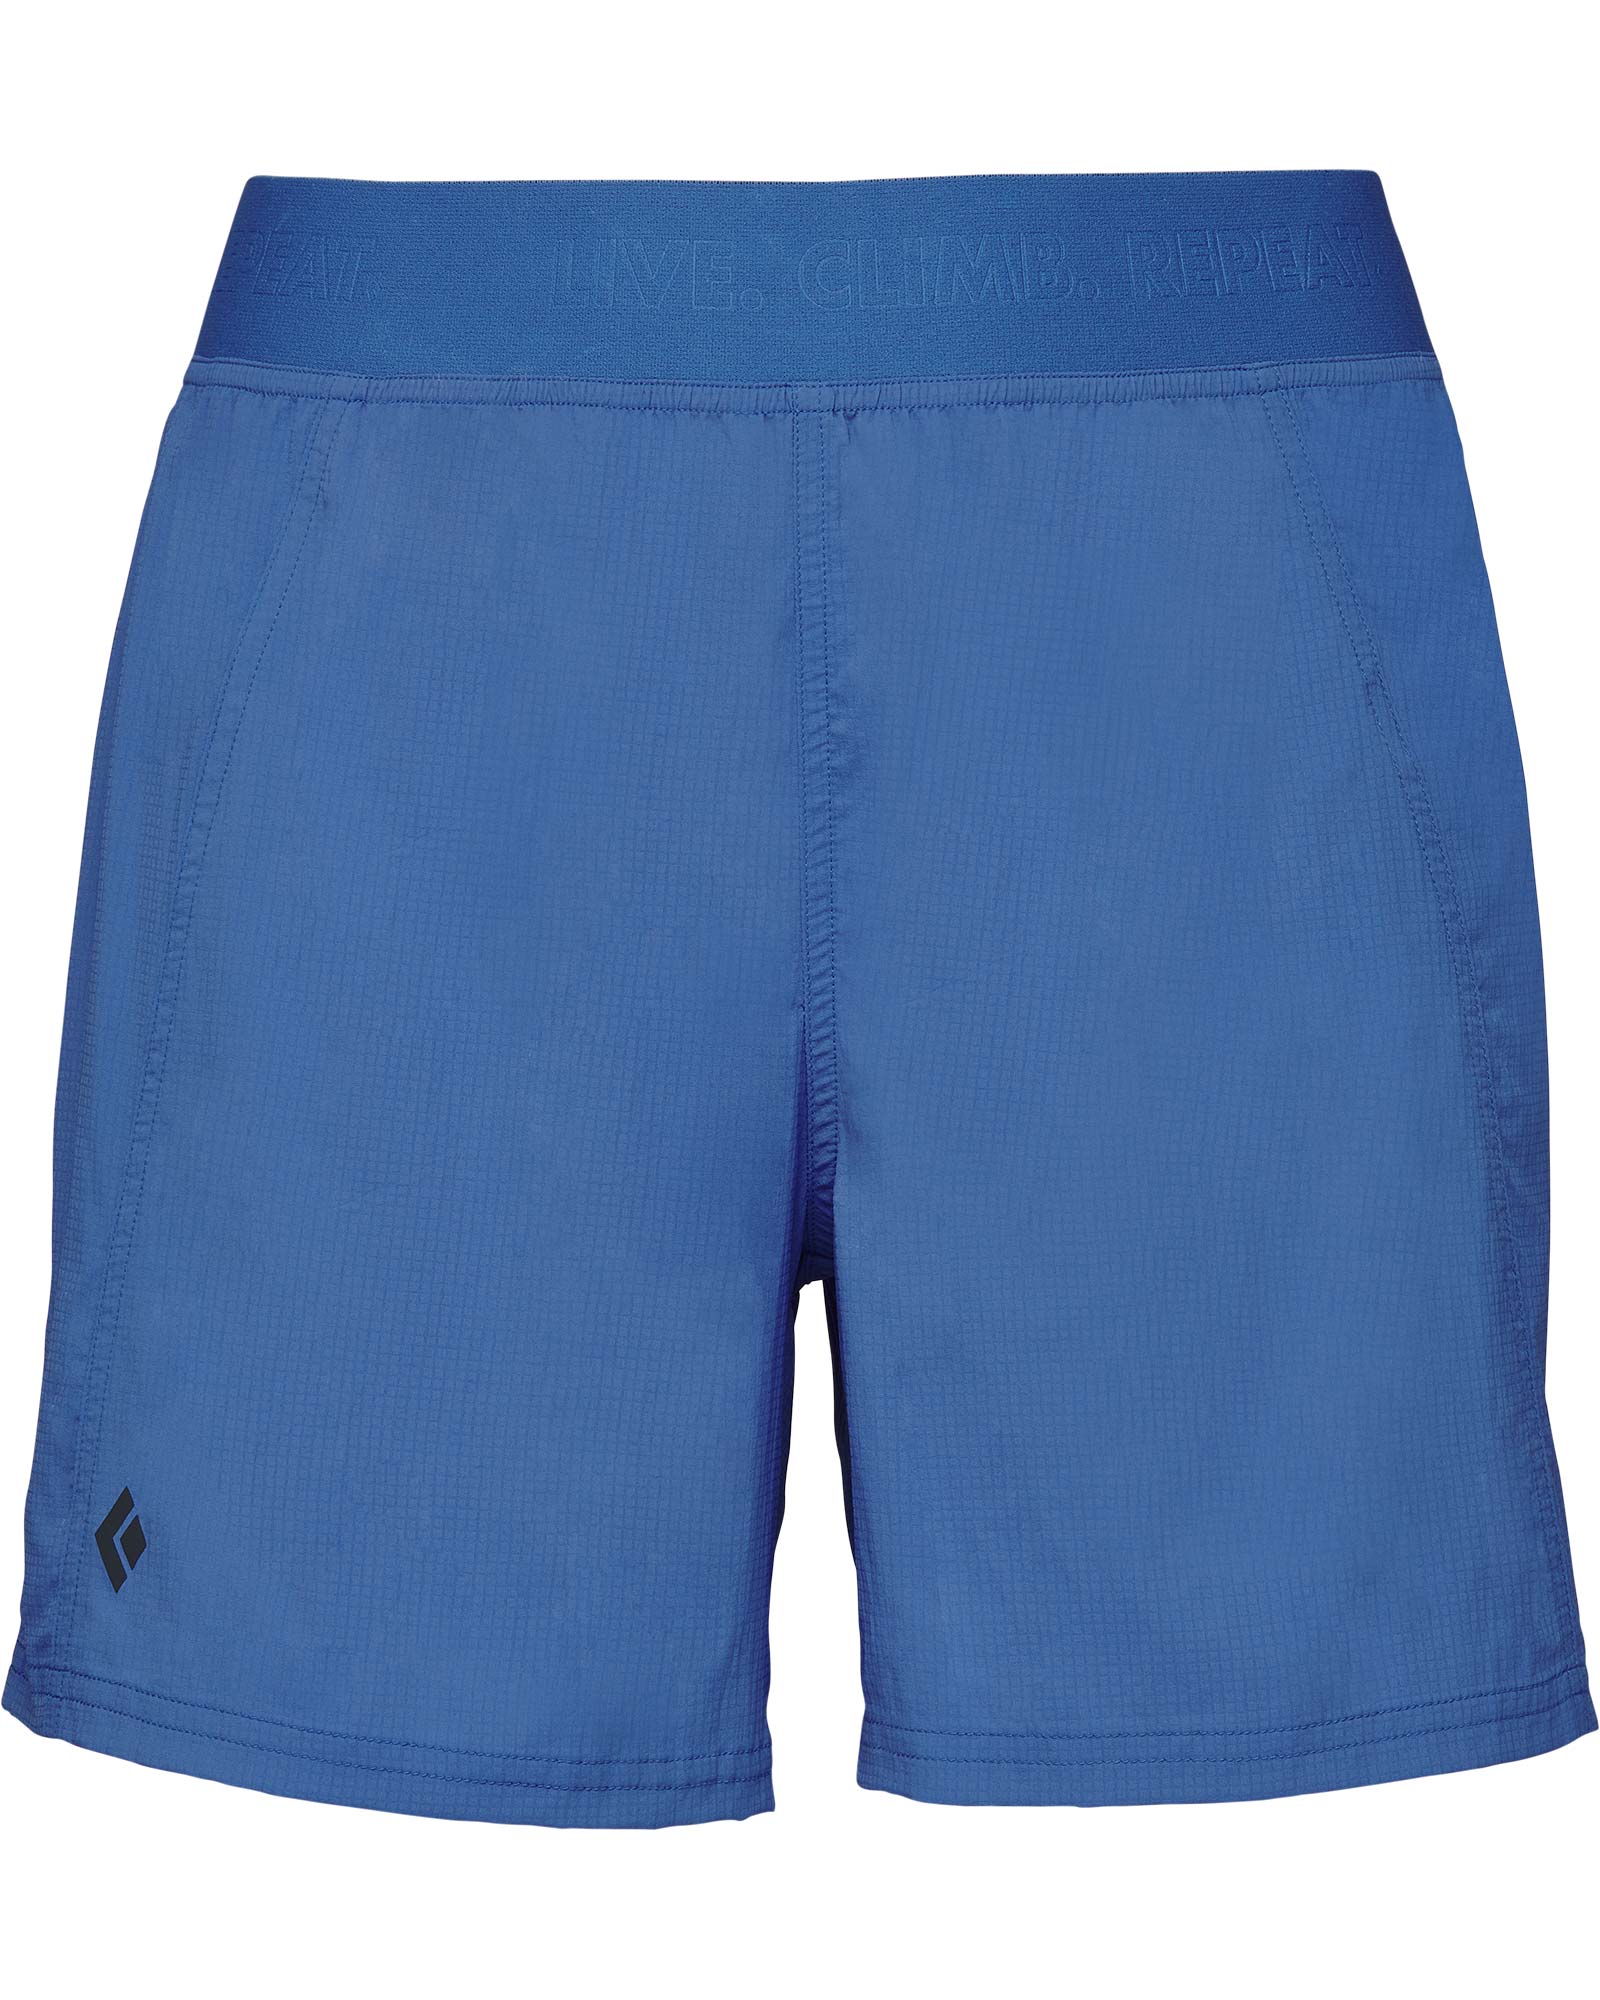 Black Diamond Women’s Sierra LT Shorts - Clean Blue S